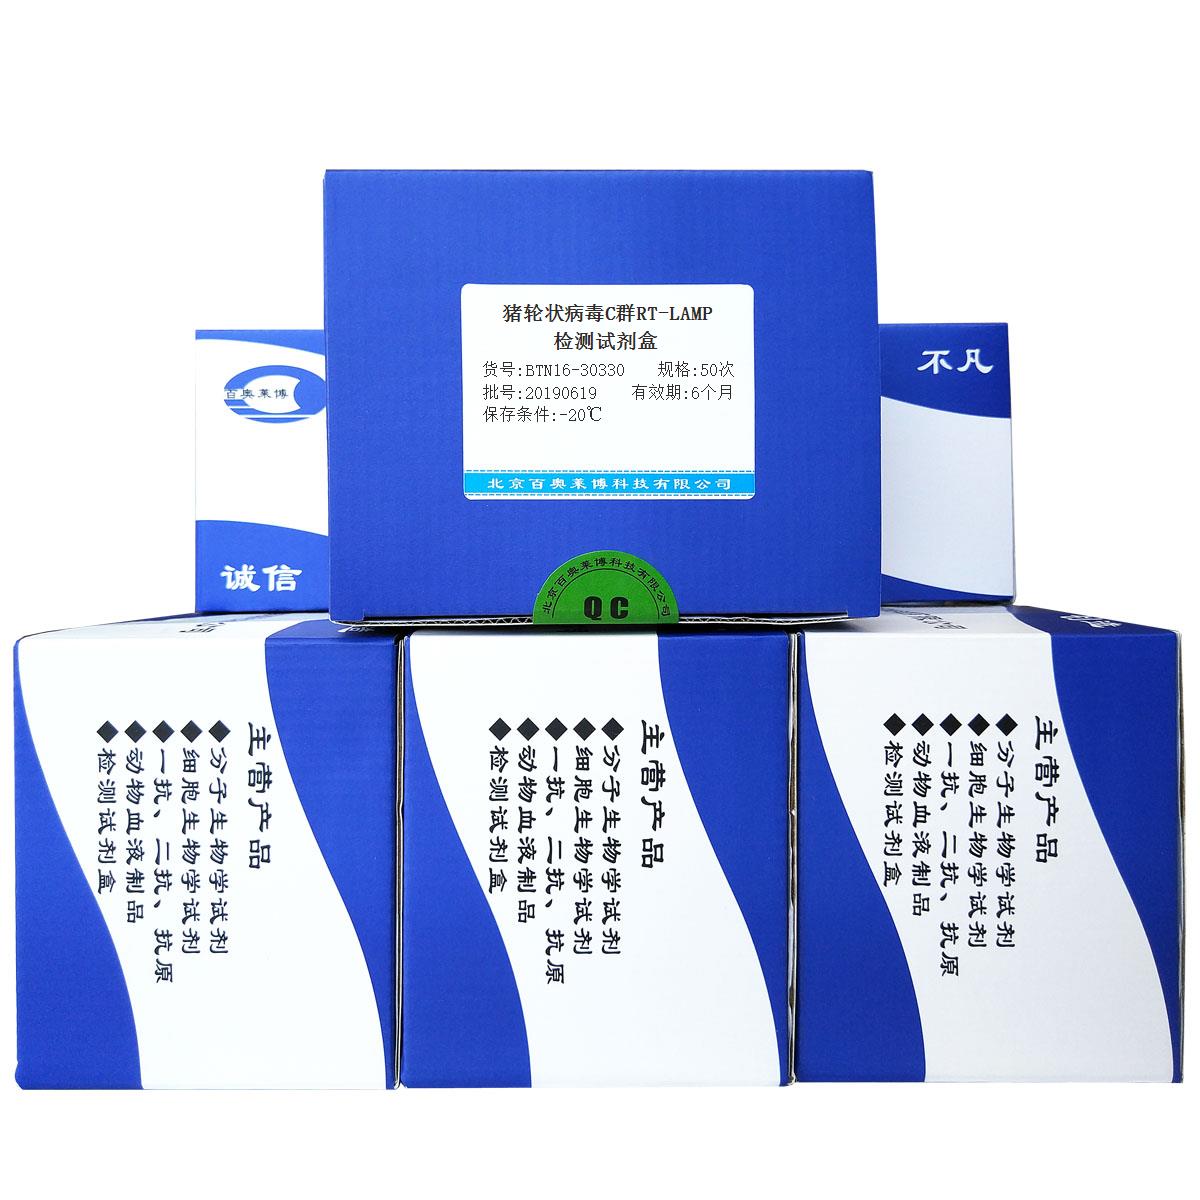 猪轮状病毒C群RT-LAMP检测试剂盒北京供应商